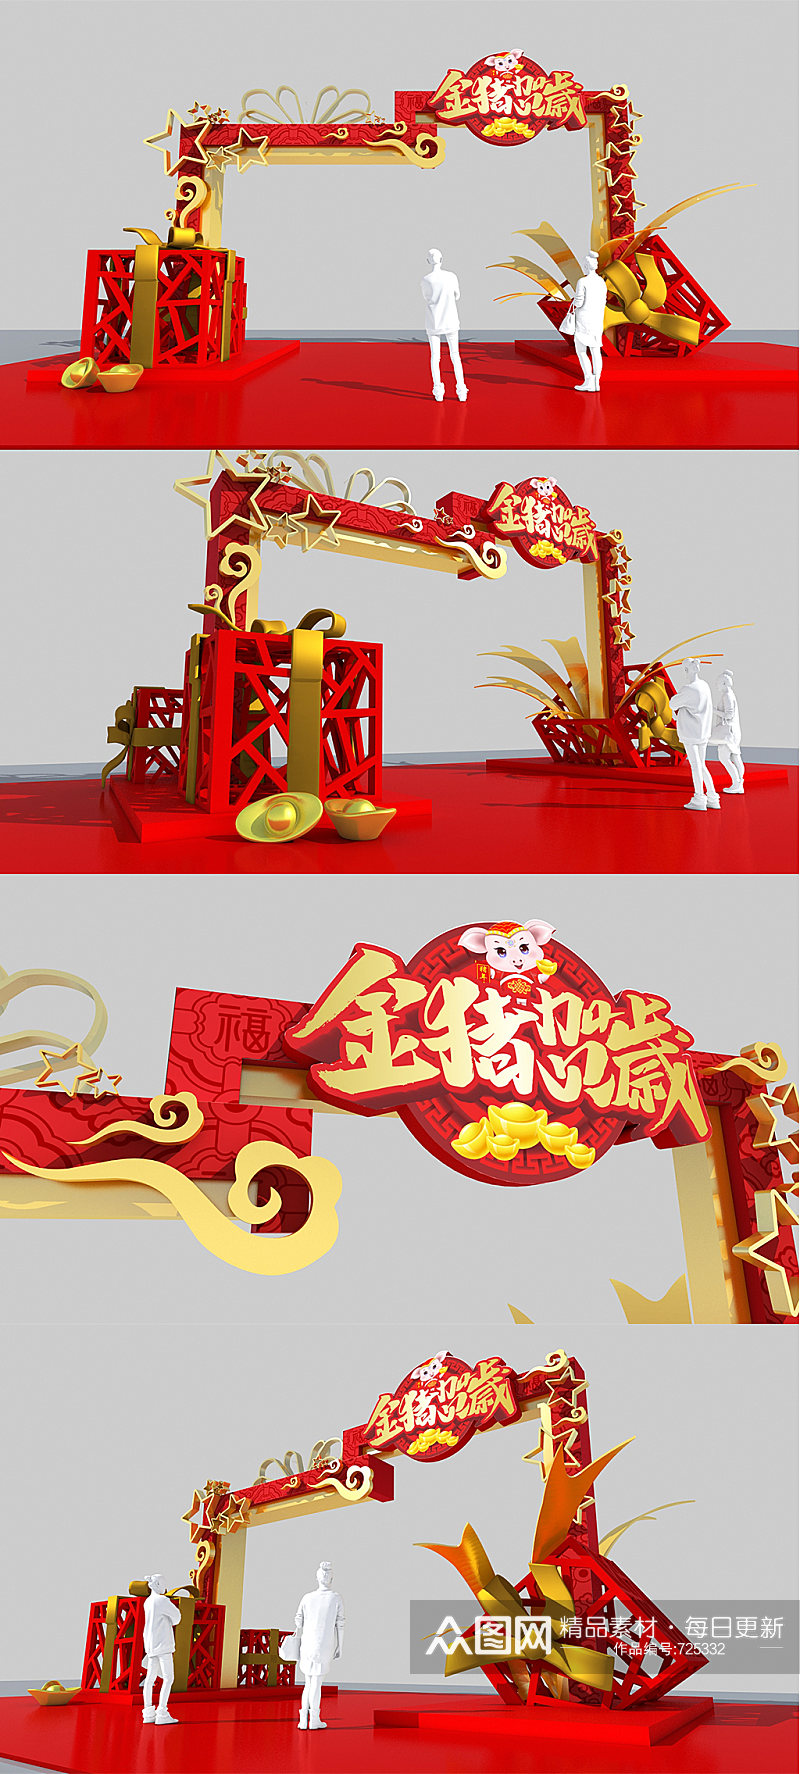 原创2021年牛年春节美陈中国风商场大门拱门设计素材